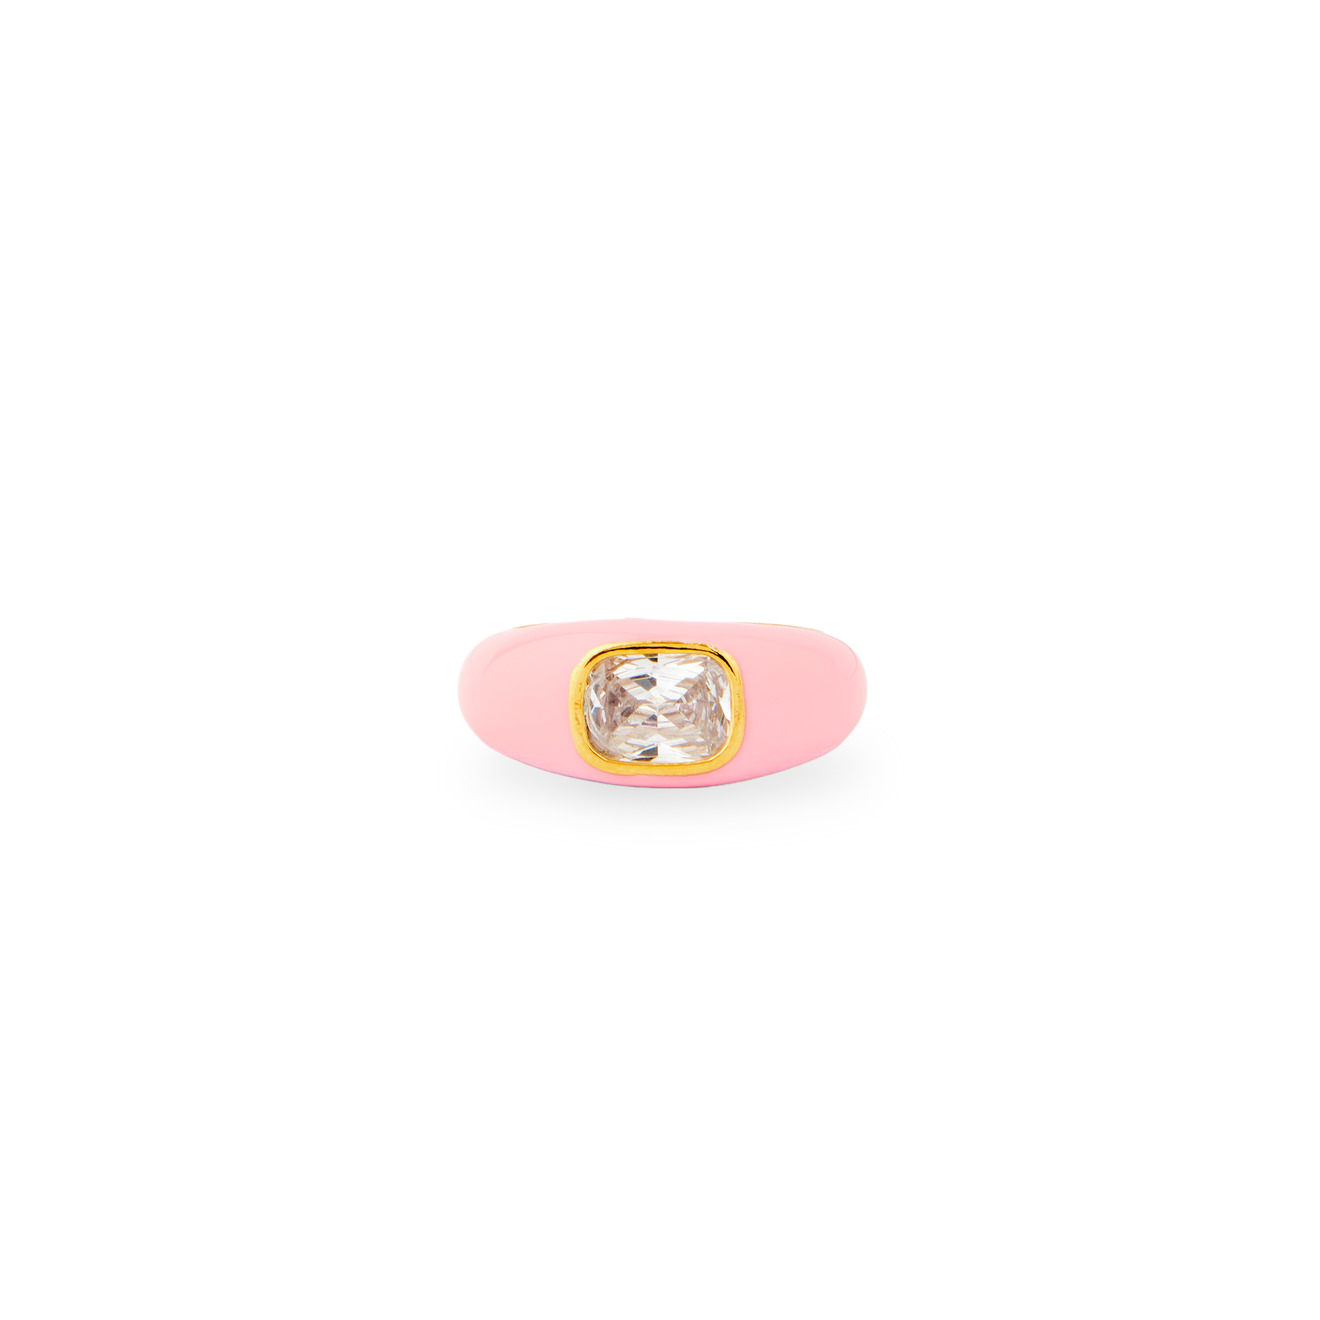 herald percy золотистое кольцо с прямоугольным кристаллом Herald Percy Кольцо с розовой эмалью и кристаллом